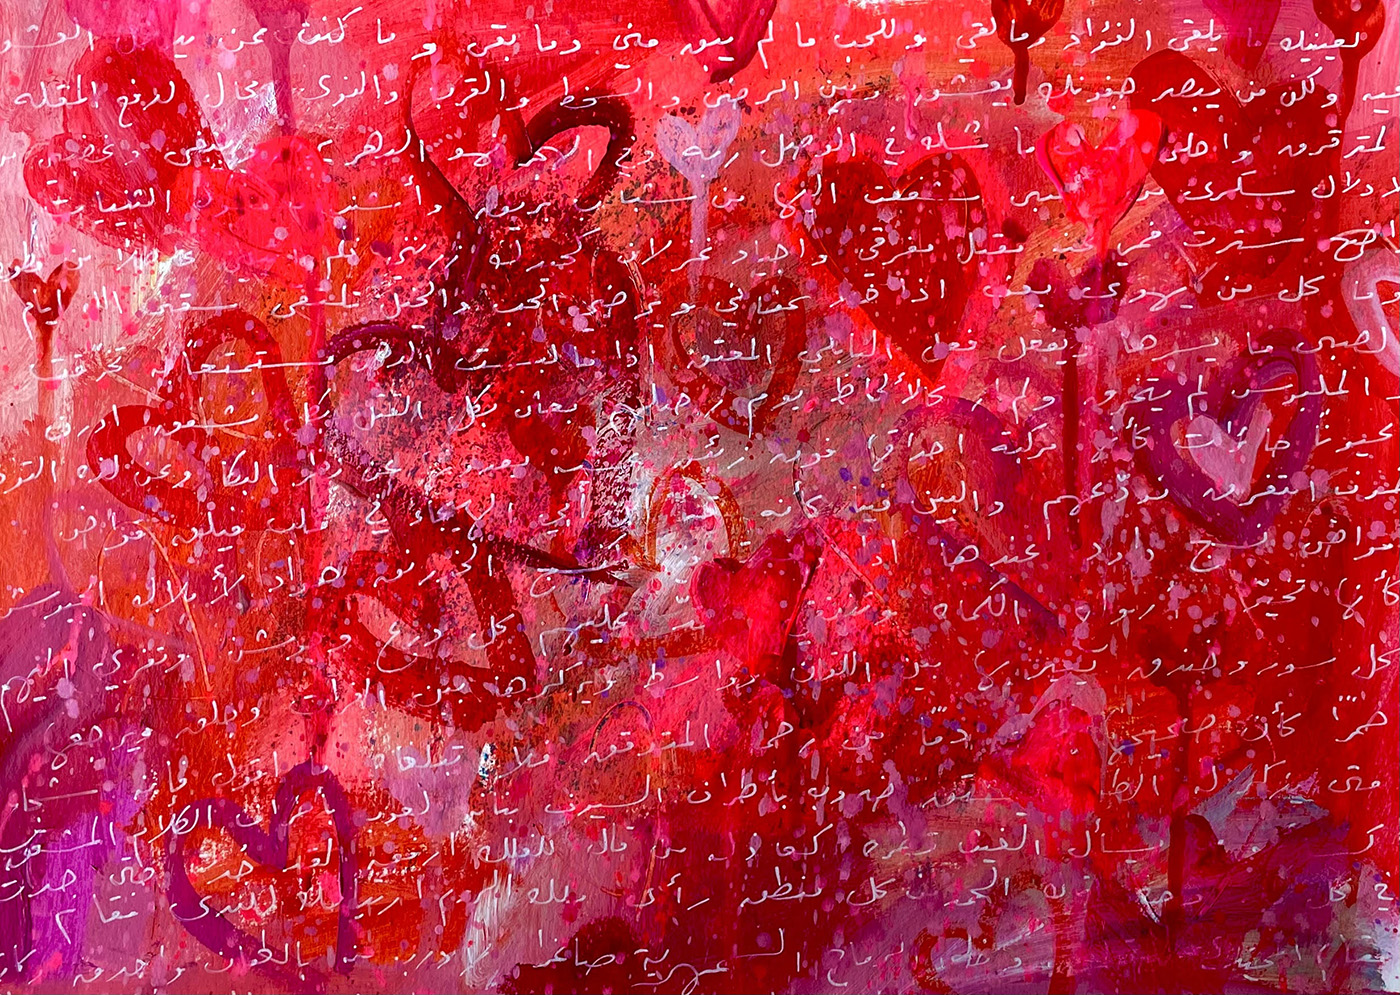 2. Cartas de amor: Al-Mutanabbi Liainaiki, 28x40cm acrílico sobre papel, 2022